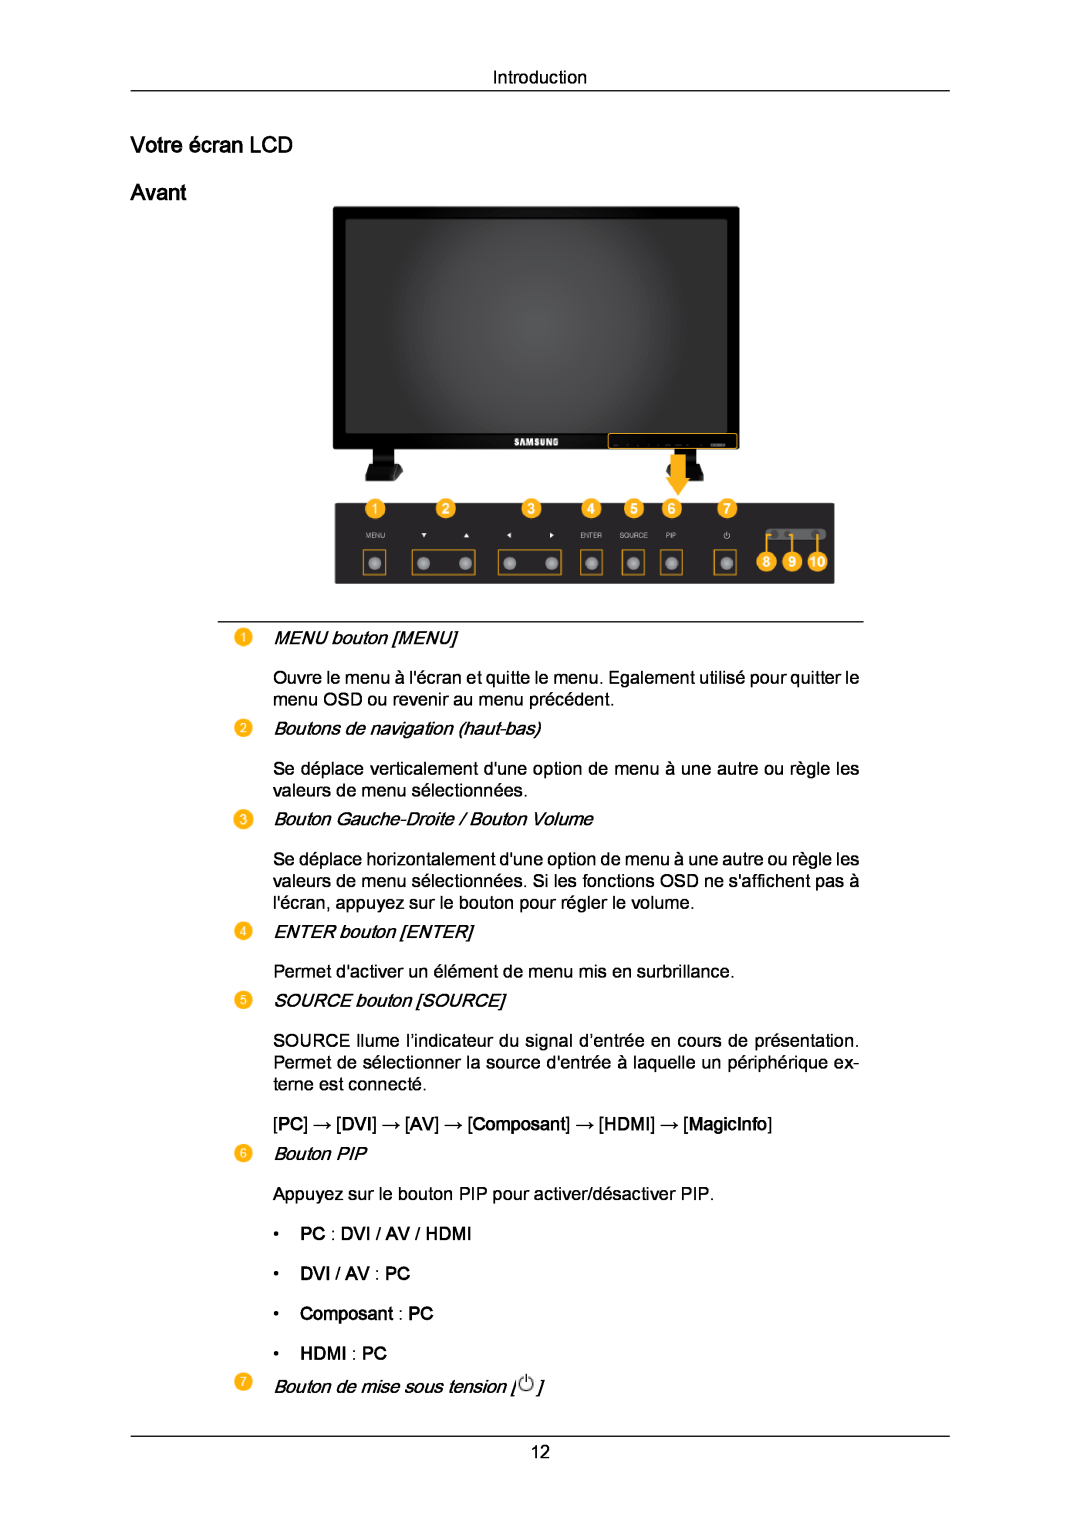 Samsung LH82TCUMBG/EN manual Votre écran LCD Avant, MENU bouton MENU, Boutons de navigation haut-bas, ENTER bouton ENTER 